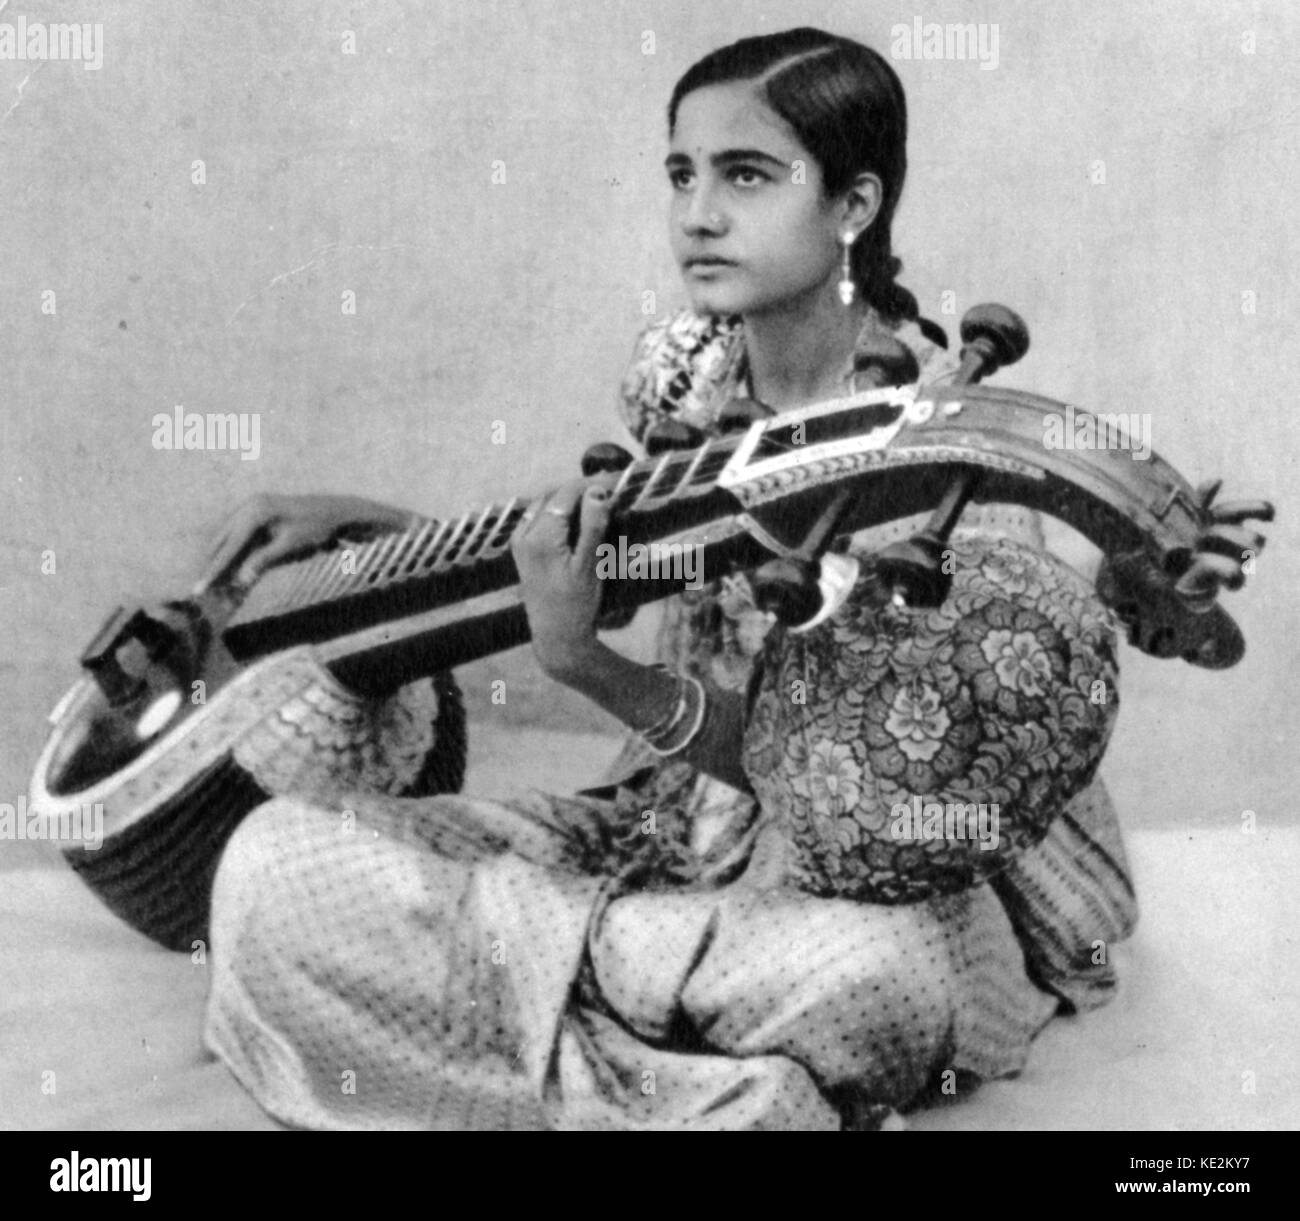 Veena durch Musiker gespielt. Indisches Saiteninstrument. Stockfoto